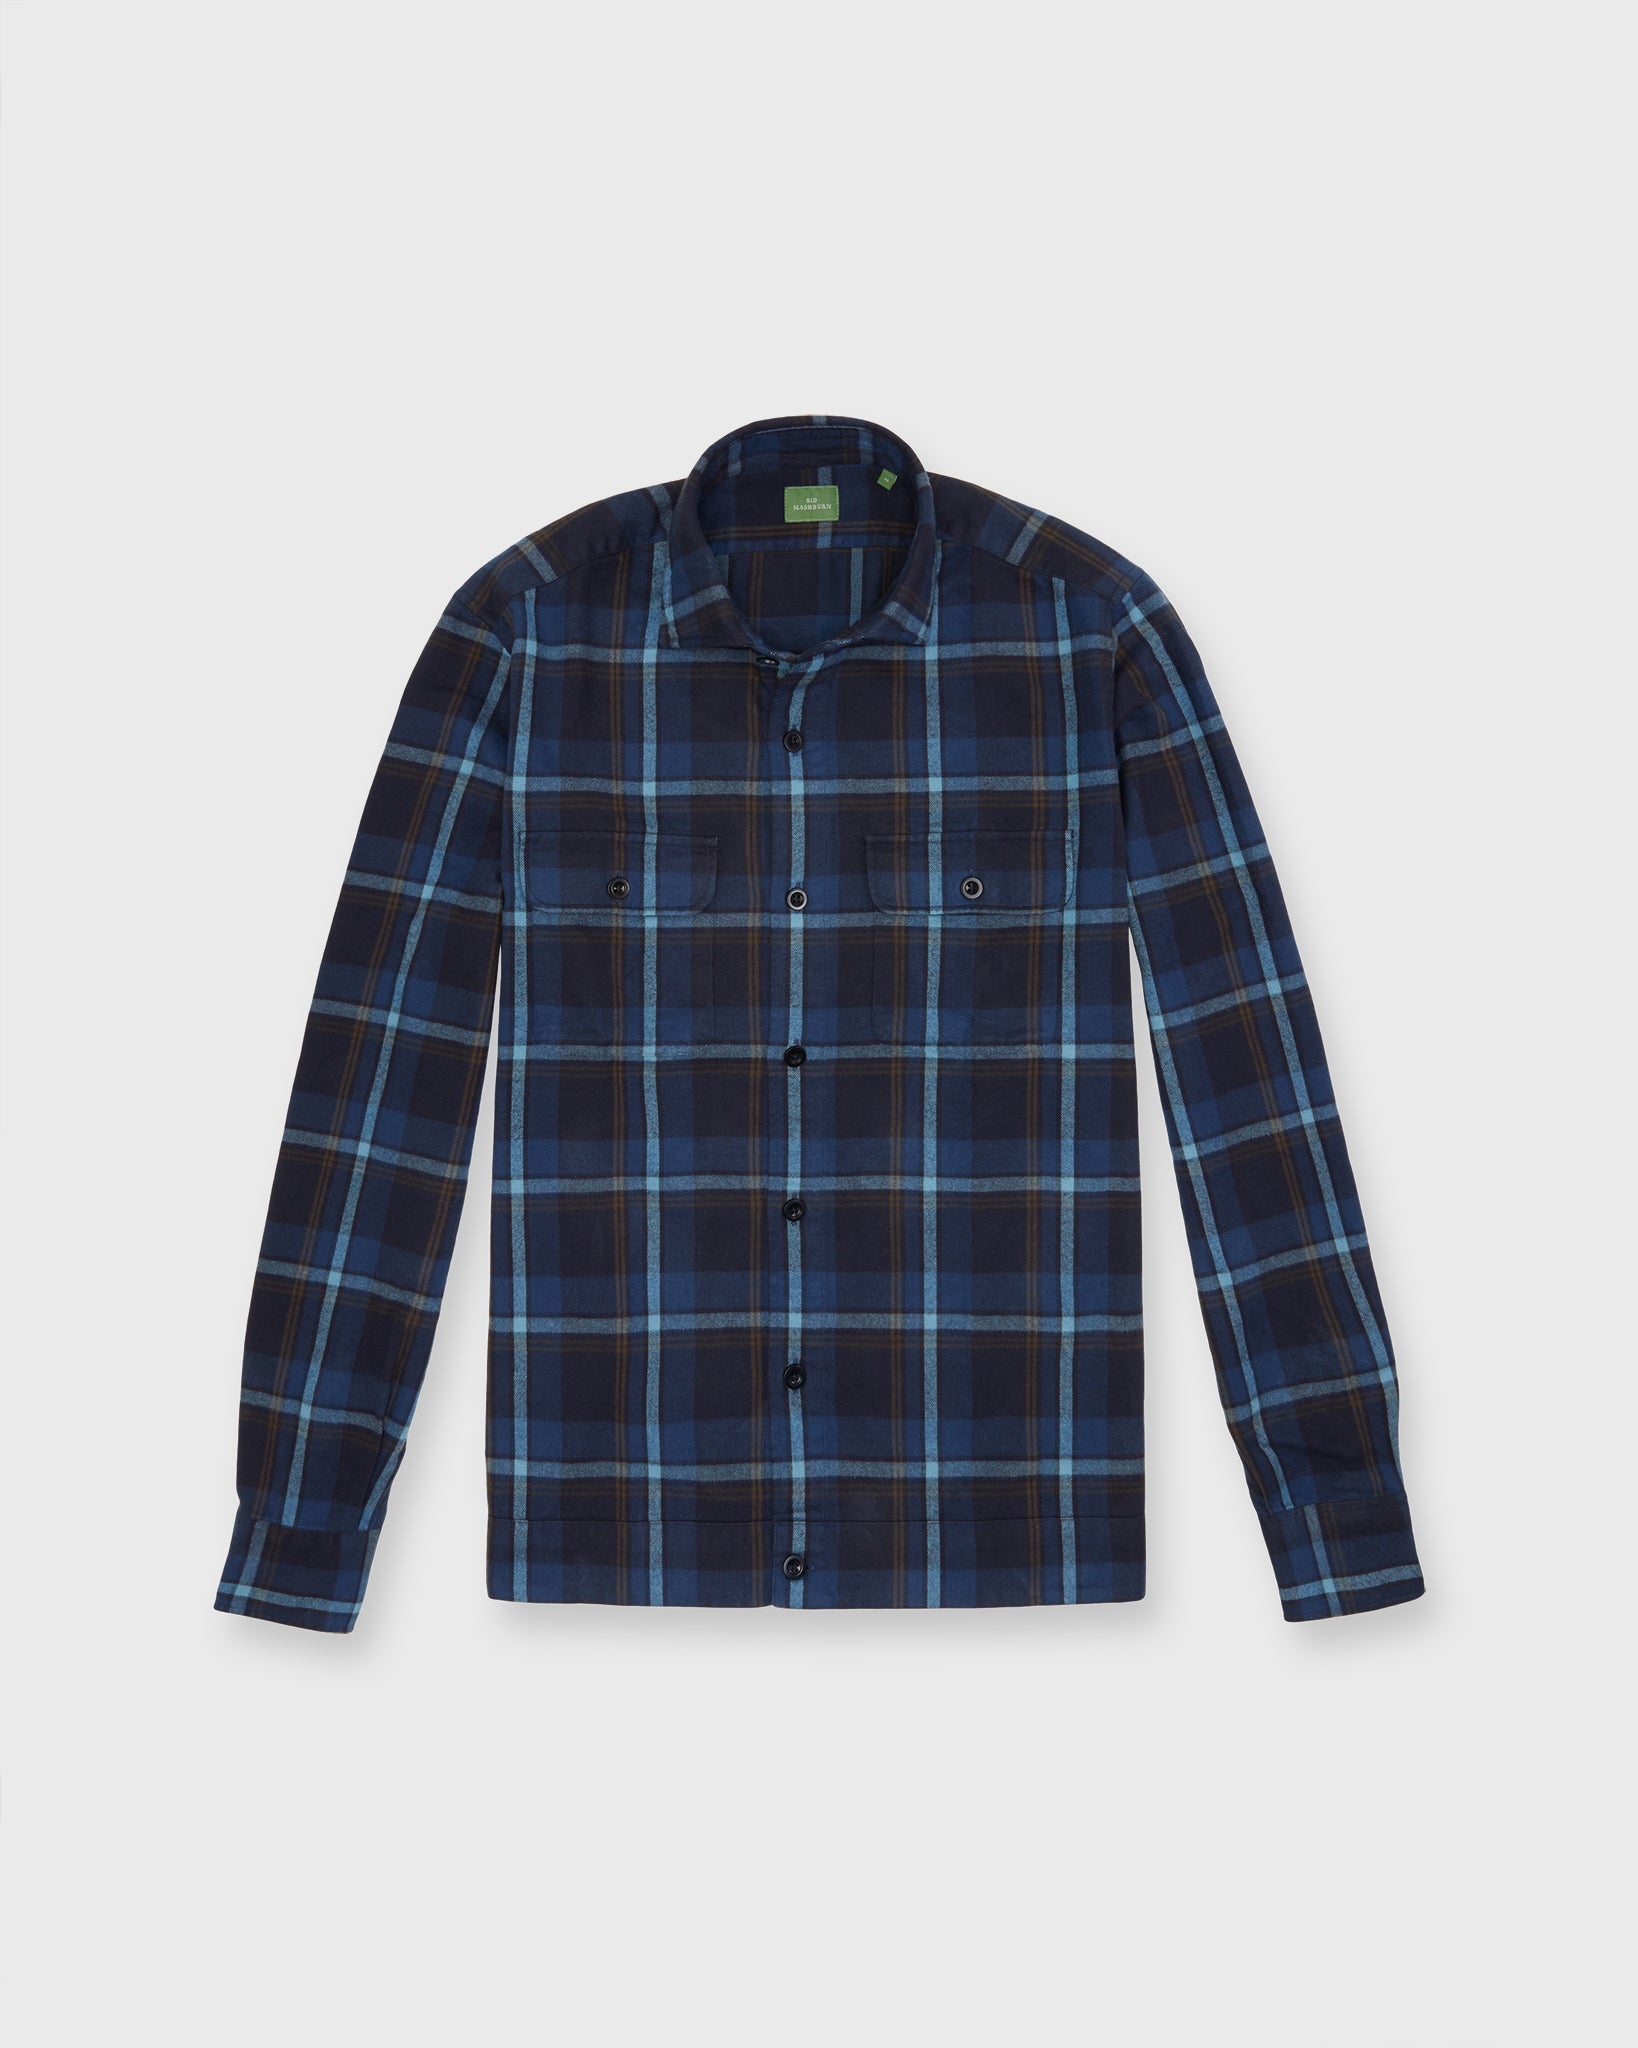 Band-Hem Work Shirt in Blue/Glacier/Olive Plaid Brushed Twill